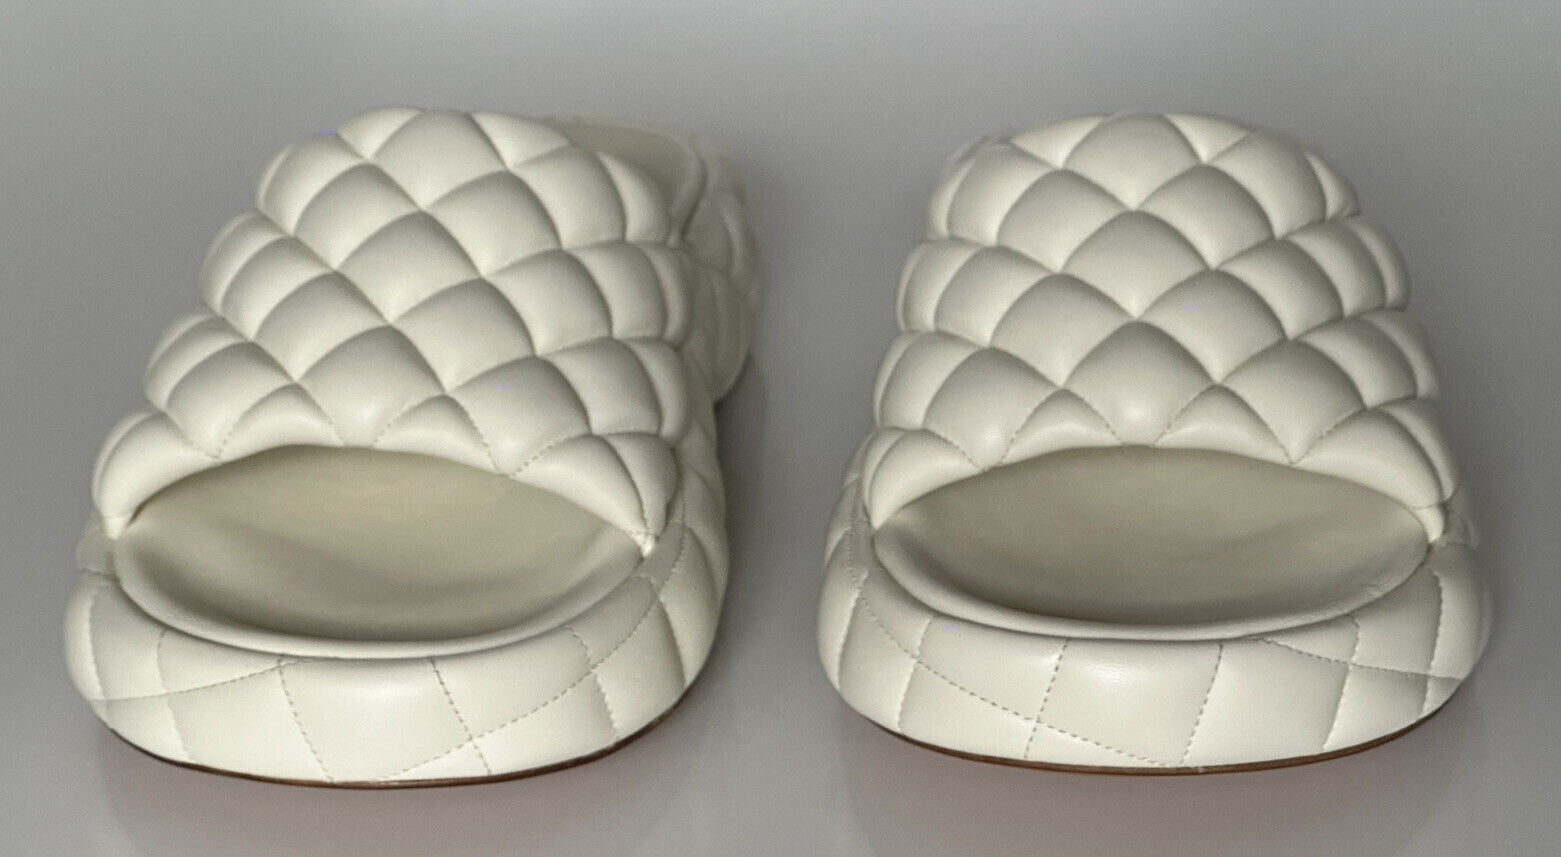 NIB Белые кожаные стеганые сандалии Bottega Veneta 1450 долларов США 9 США 708885 IT 